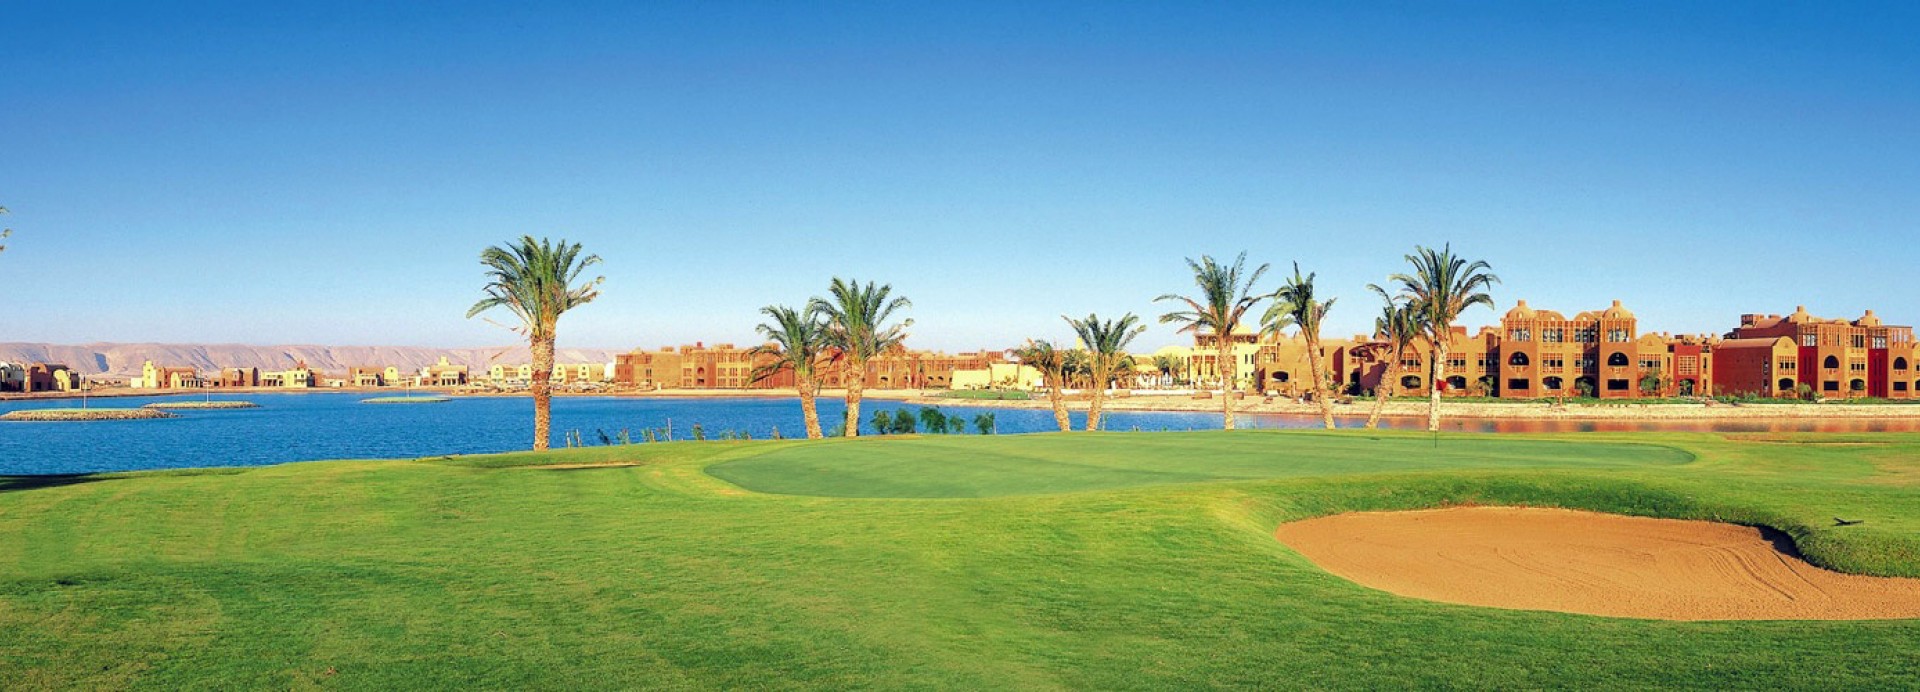 Steigenberger El Gouna Golf Club  | Golfové zájezdy, golfová dovolená, luxusní golf